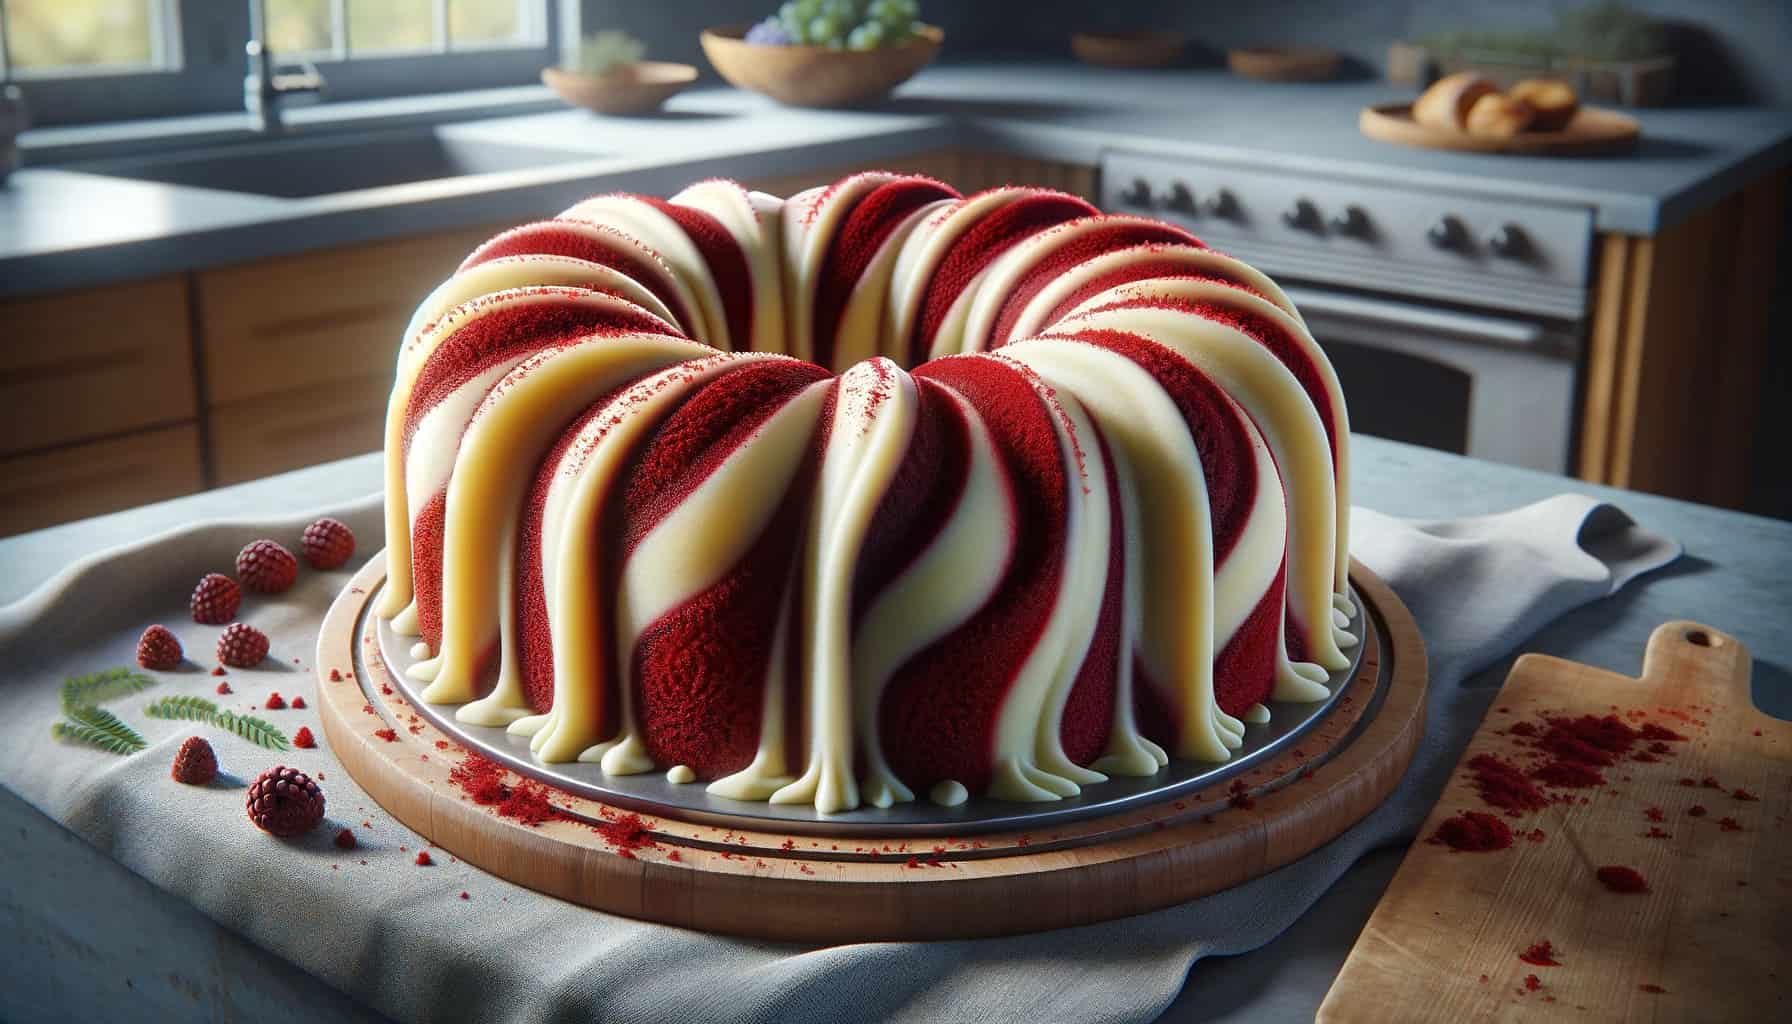 Vanilla-red velvet swirl bundt cake